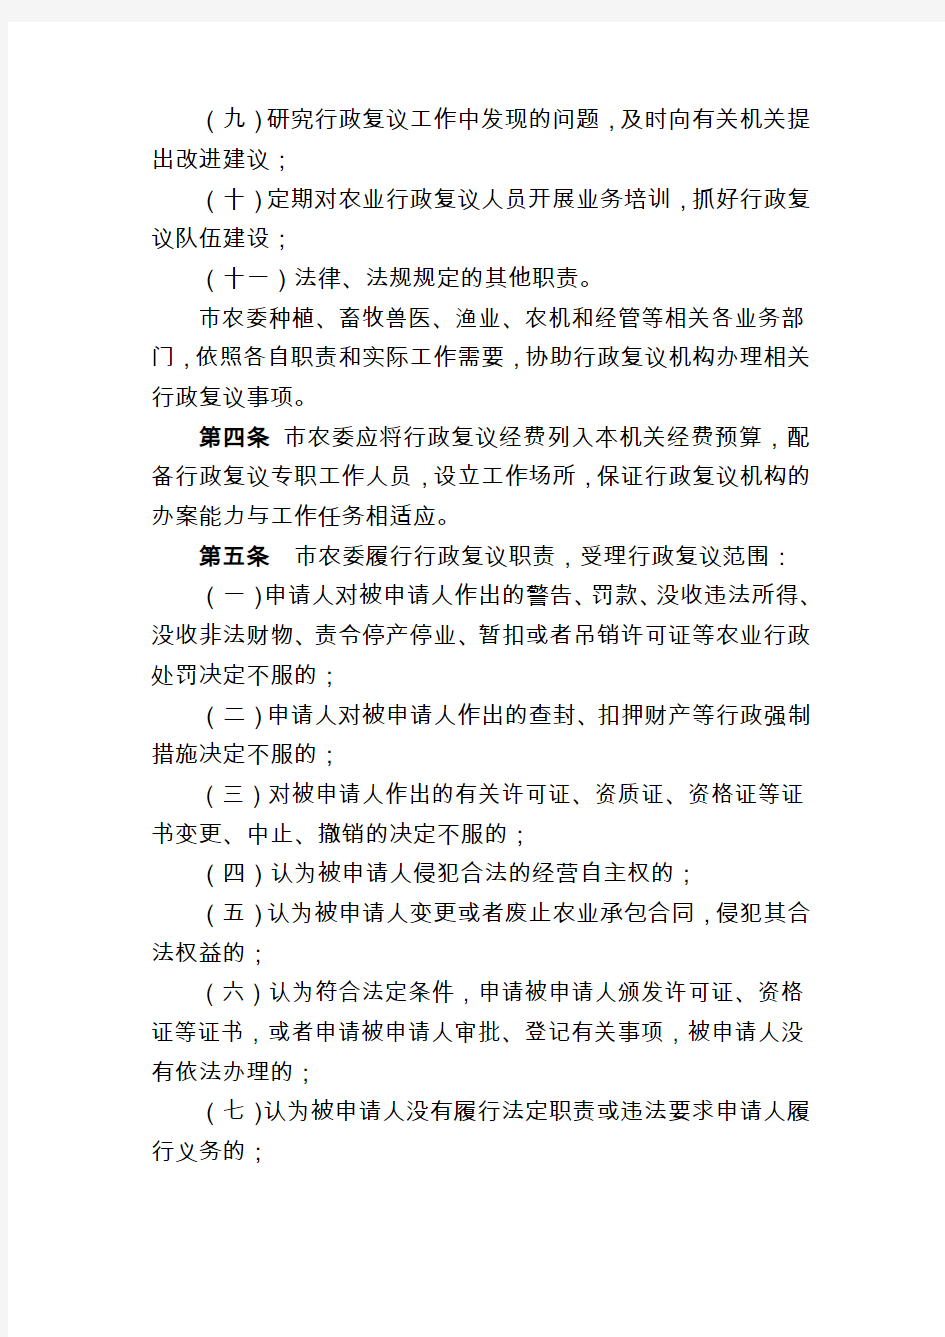 天津市农村工作委员会行政复议若干规定